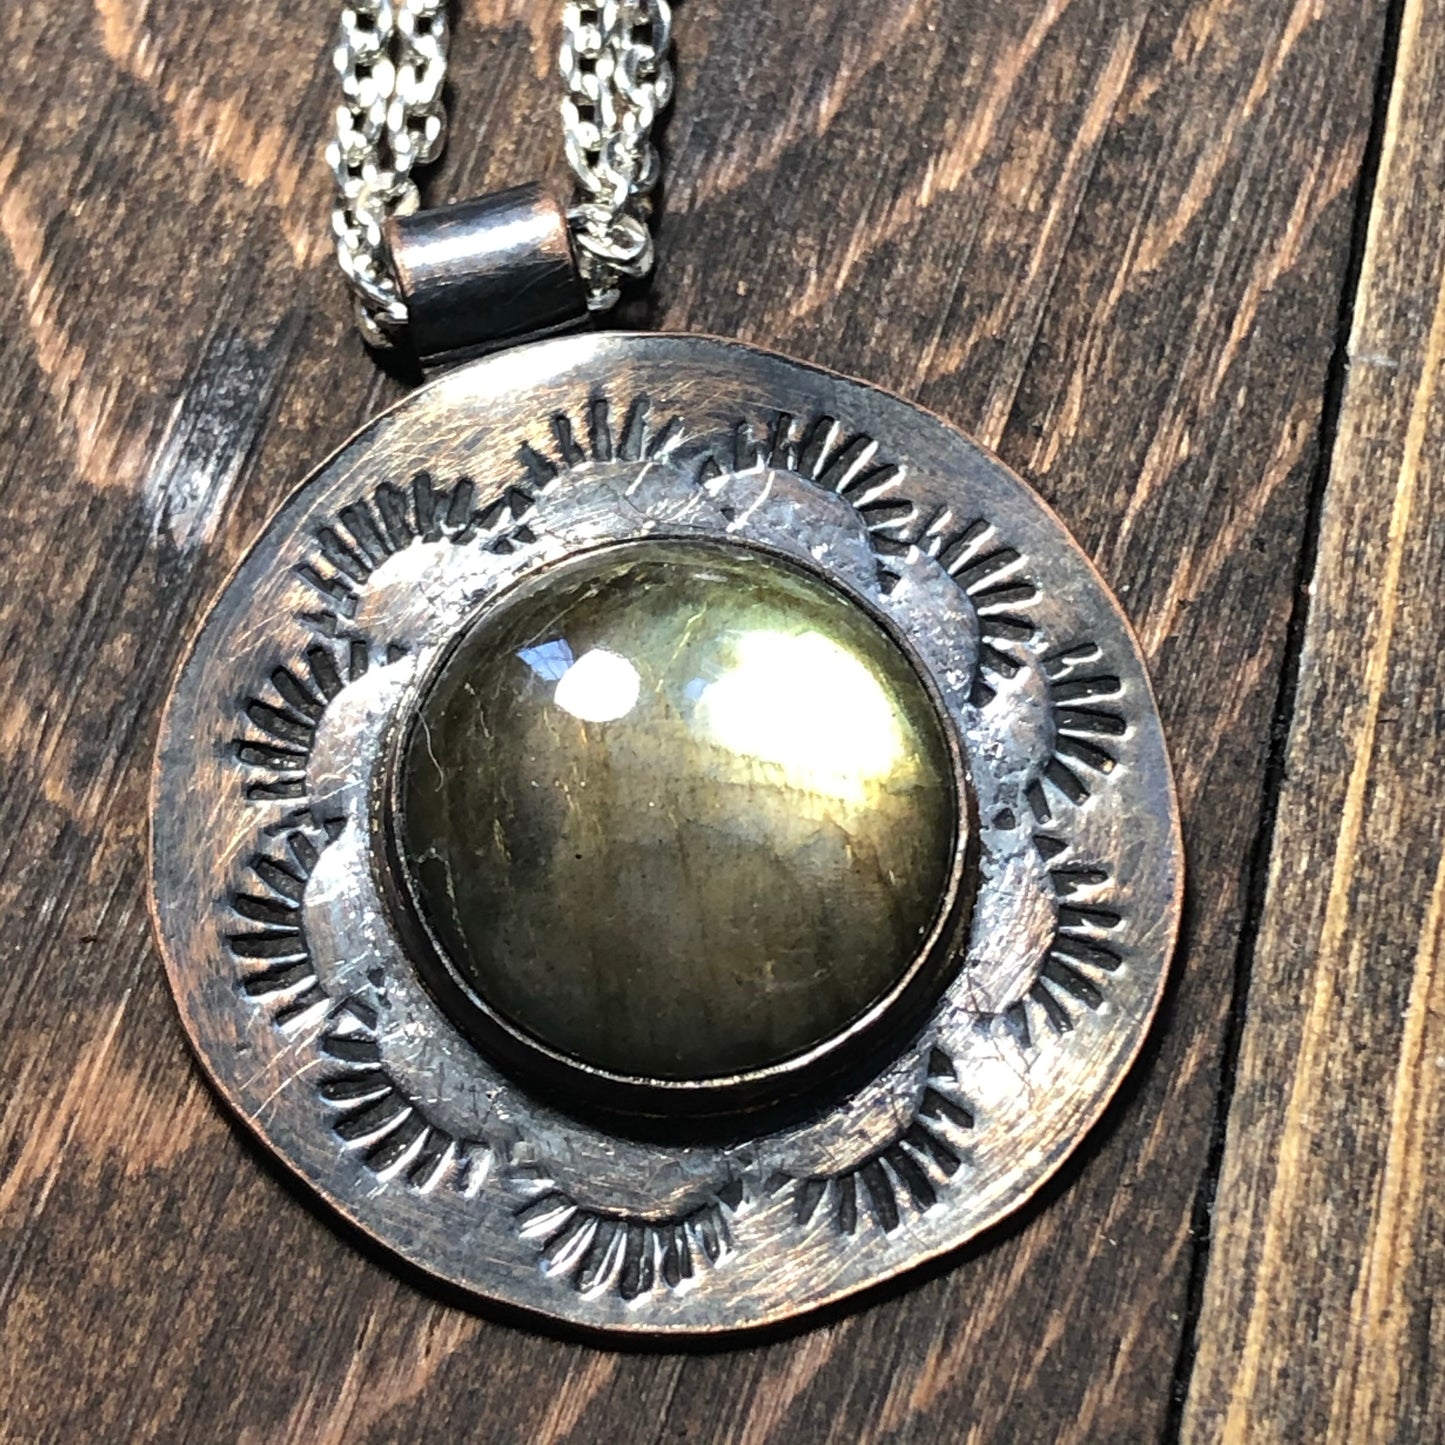 Copper and Labradorite pendant